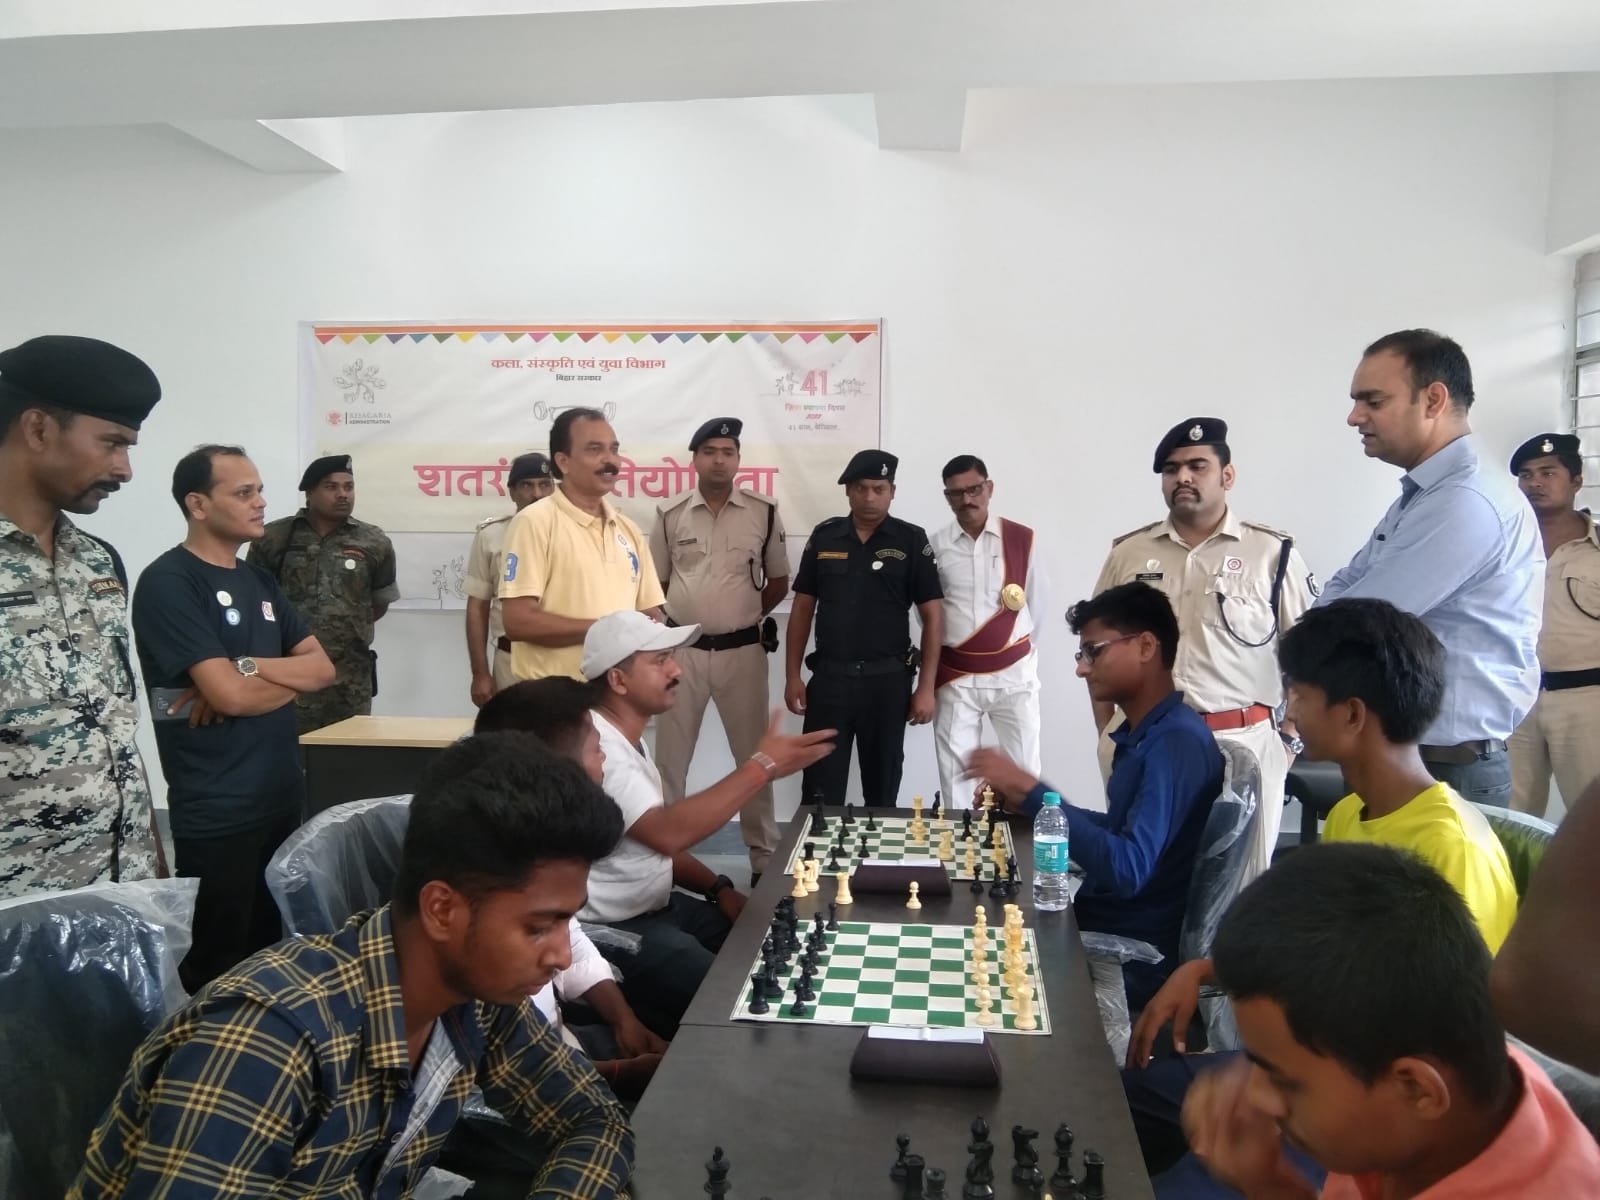 खगड़िया जिला शतरंज संघ द्वारा आयोजित एक दिवसीय रैपिड शतरंज प्रतियोगिता में हर्षवर्धन और रुद्रवीर बने चैंपियन...